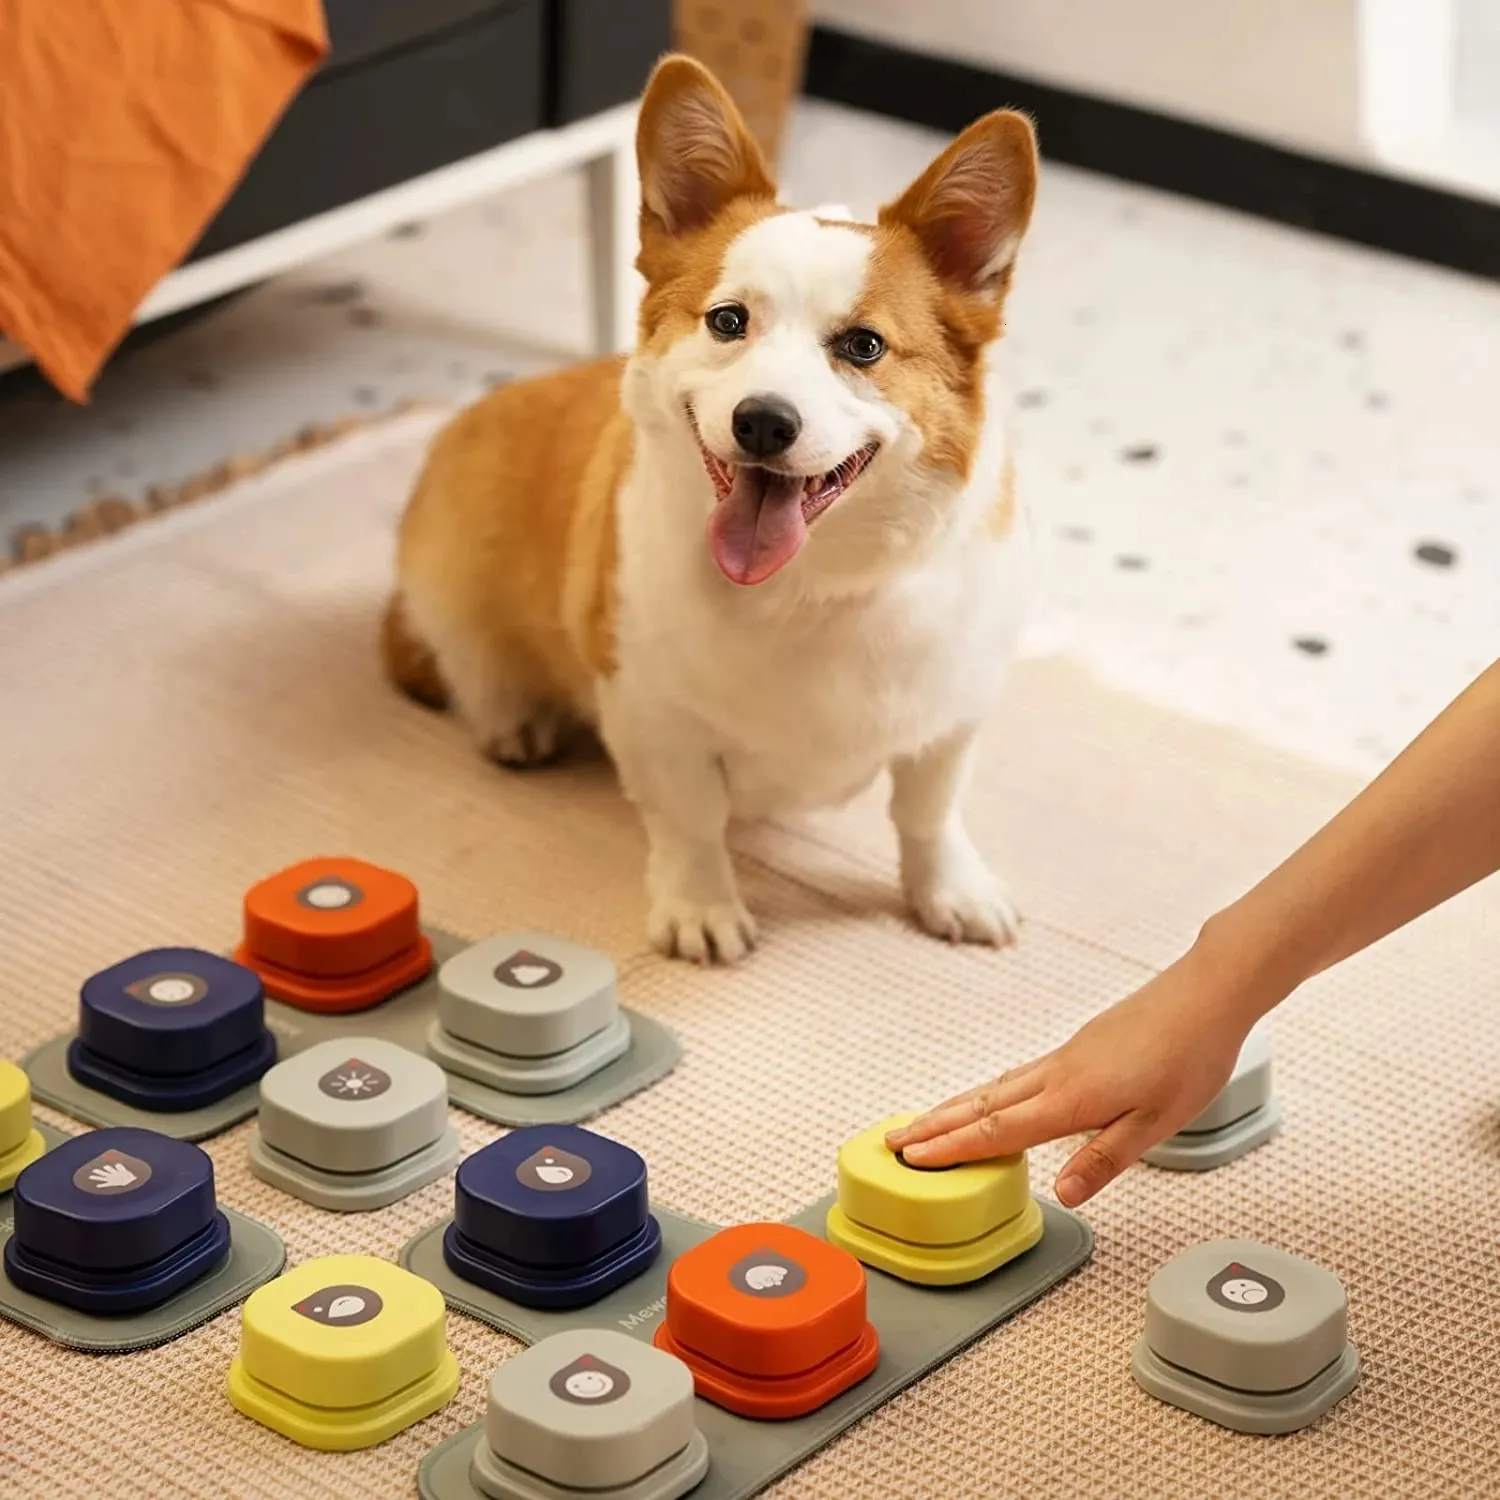 ألعاب الكلاب مضغات زر الكلب MEWOOFUN سجل الحديث الحيوانات الأليفة التواصل الصوتية الصوتية